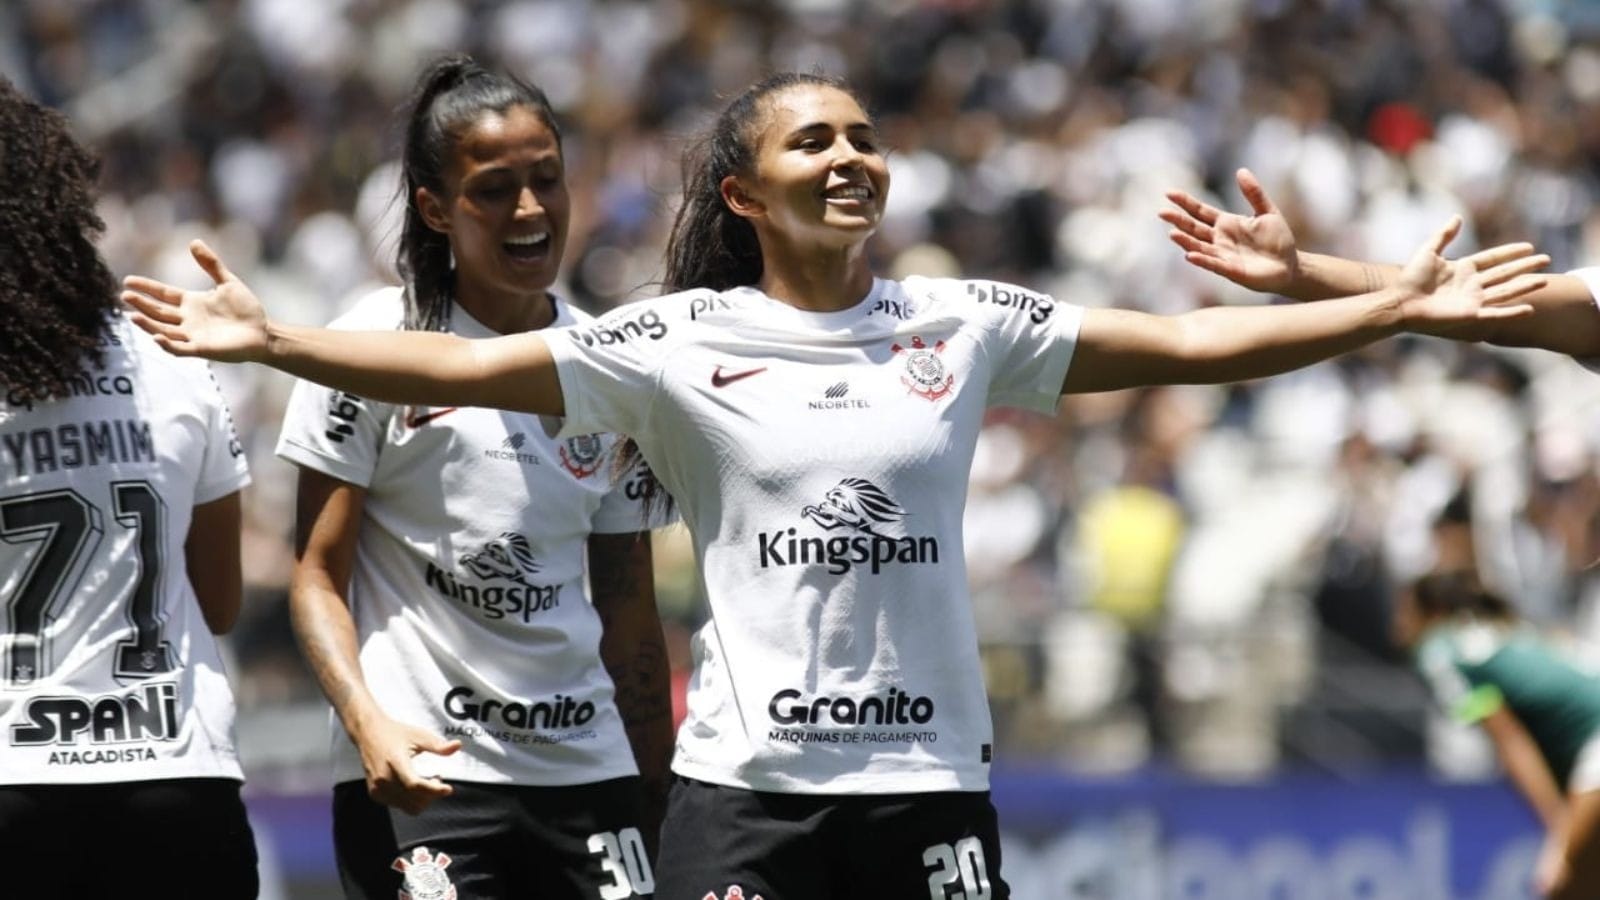 Paulistão Feminino 22 – Ingressos para Corinthians x Palmeiras (21/9) no  Nogueirão